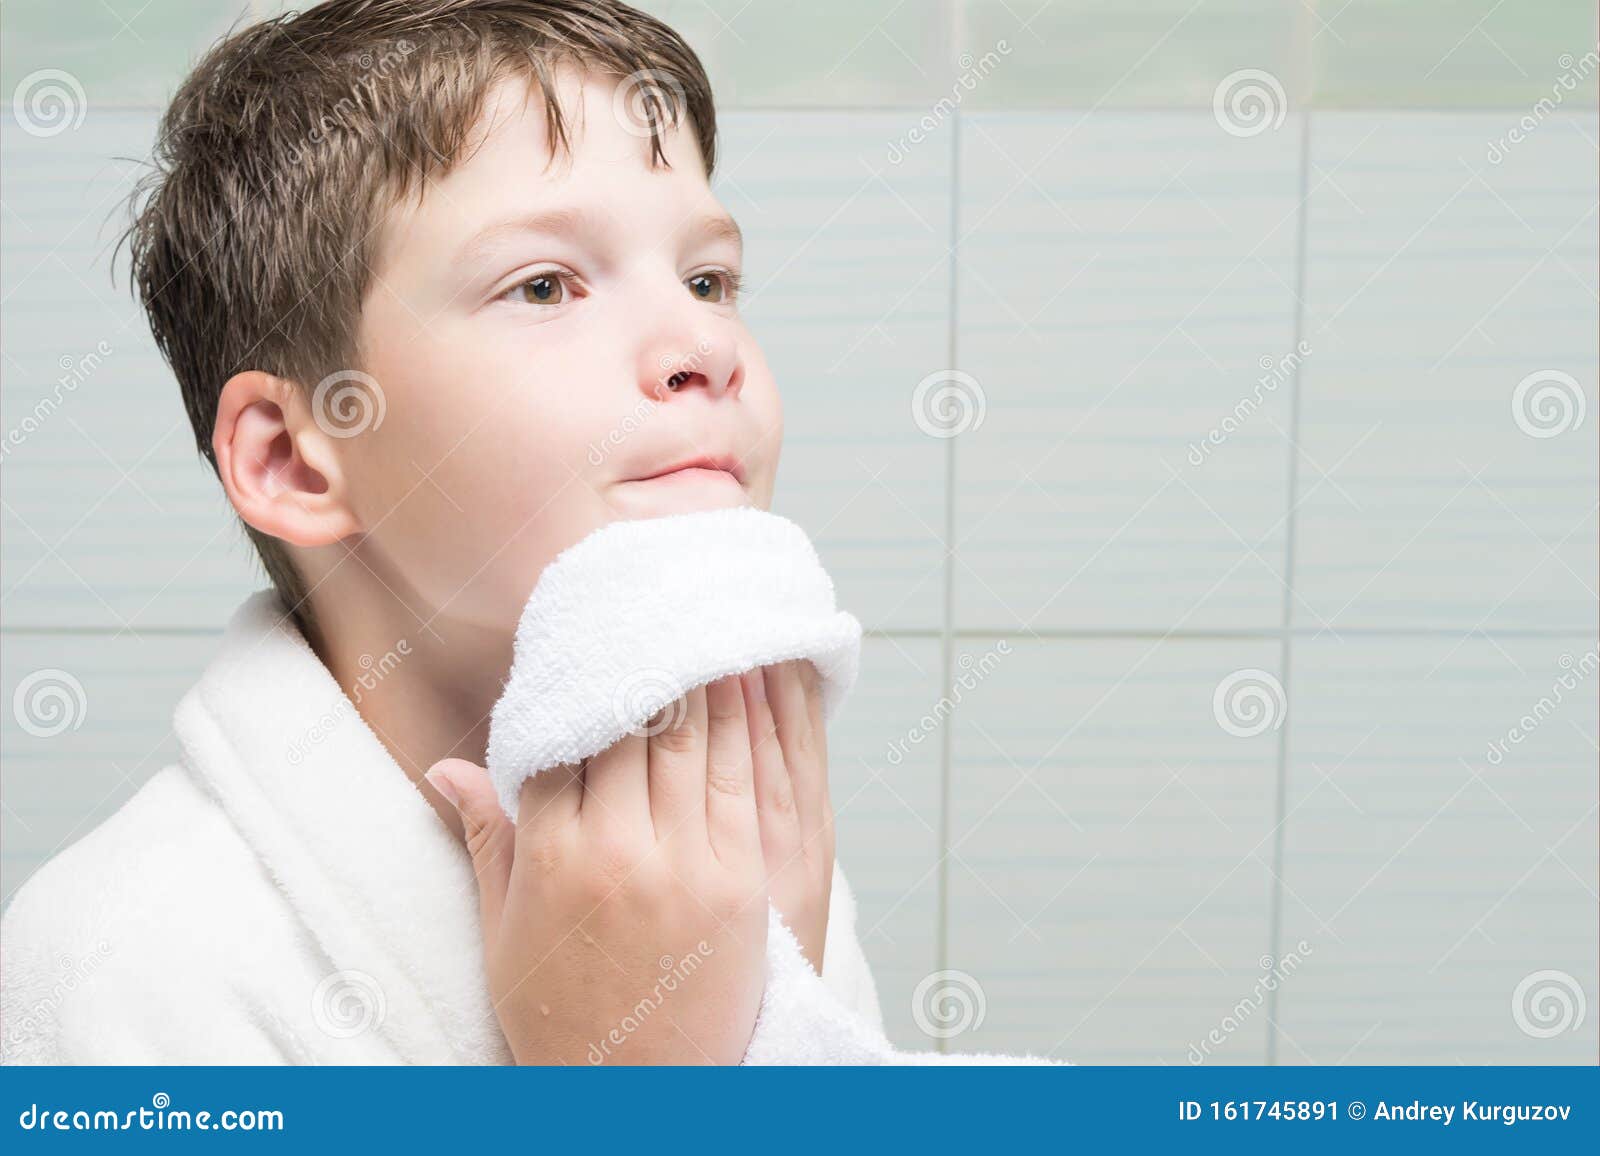 Вытирание полотенцем. Мальчик вытирается полотенцем. Вытирает лицо полотенцем. Мальчик вытирает лицо. Мальчик умывается полотенце.